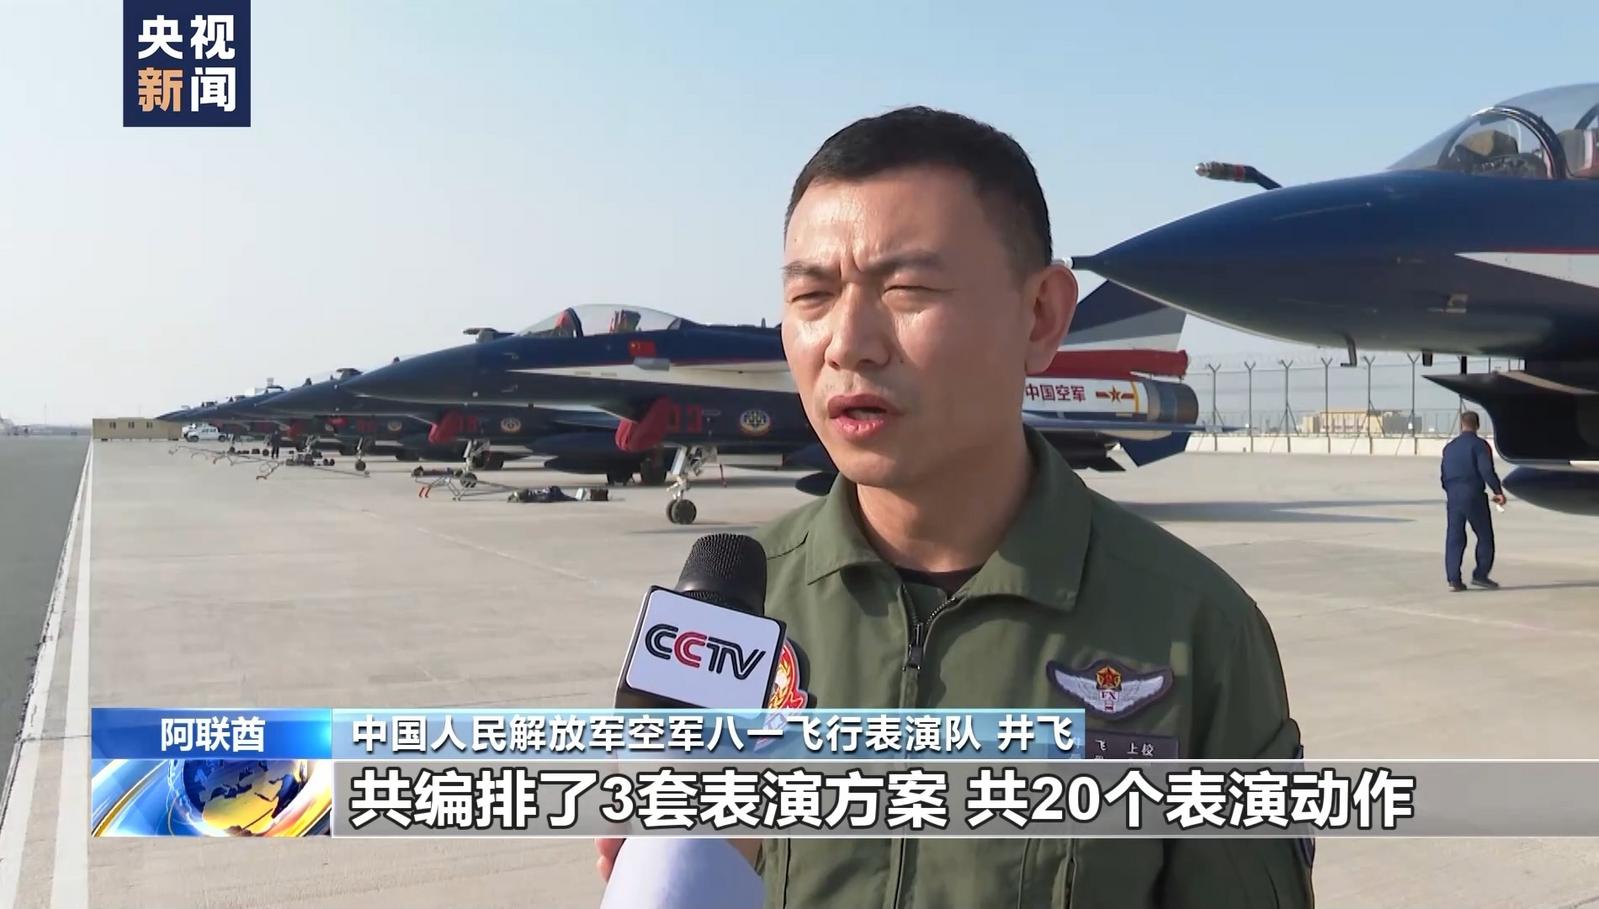 中国空军八一飞行表演队抵达迪拜参加迪拜航空展